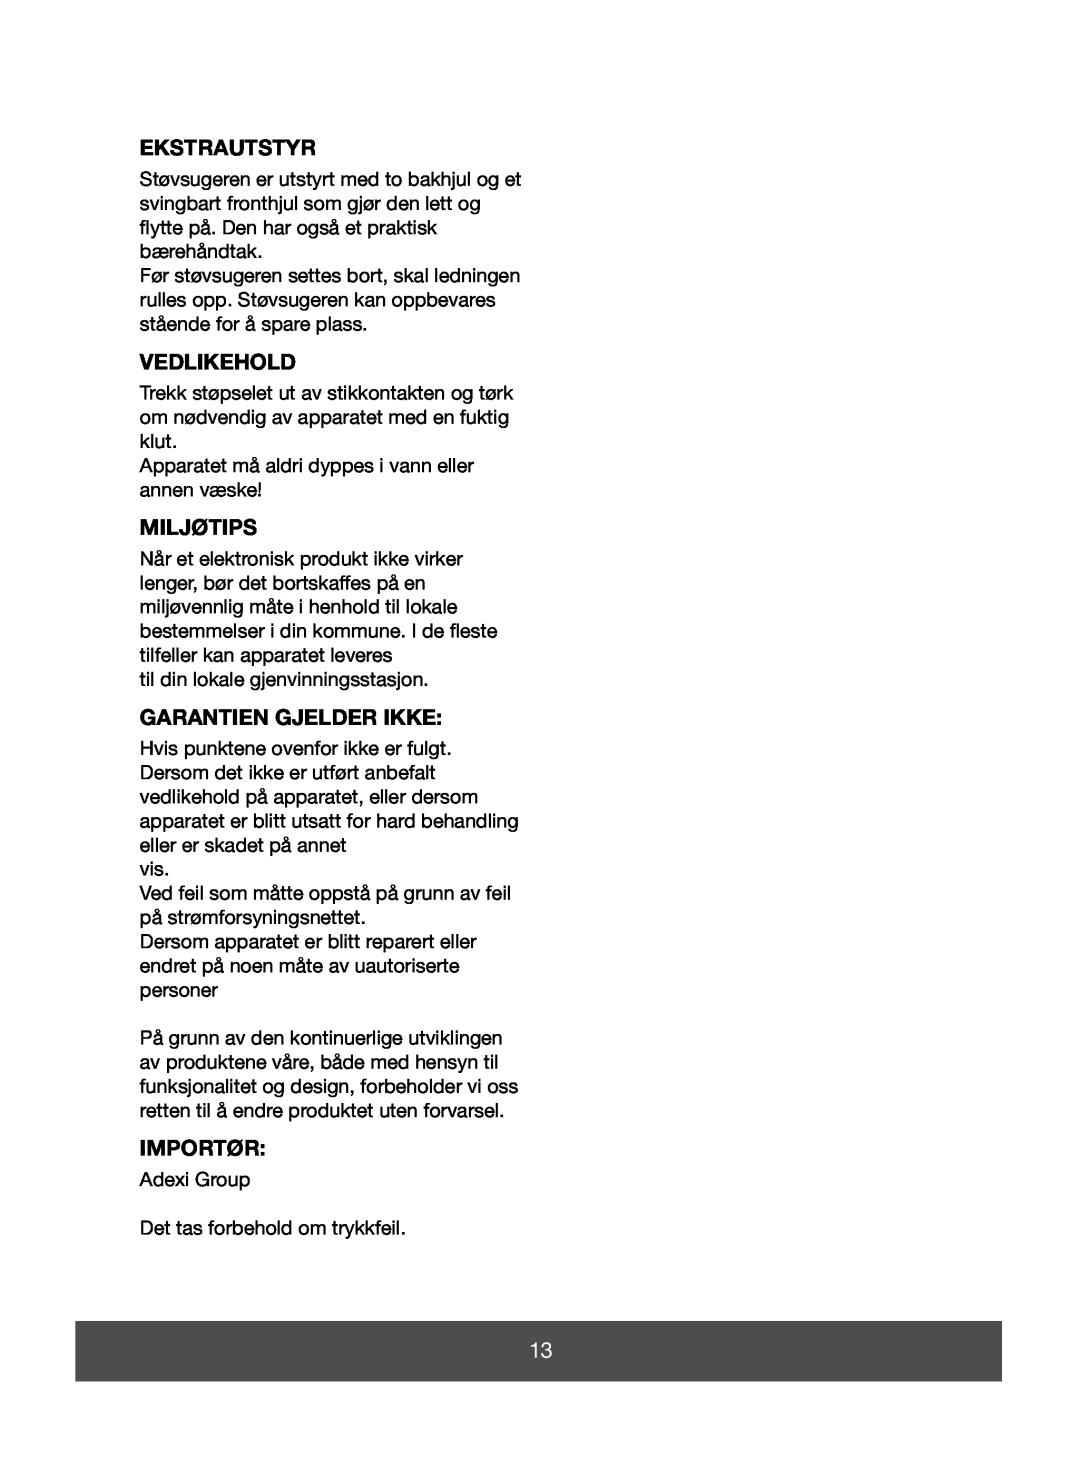 Melissa 640-123 manual Ekstrautstyr, Vedlikehold, Garantien Gjelder Ikke, Miljøtips, Importør 